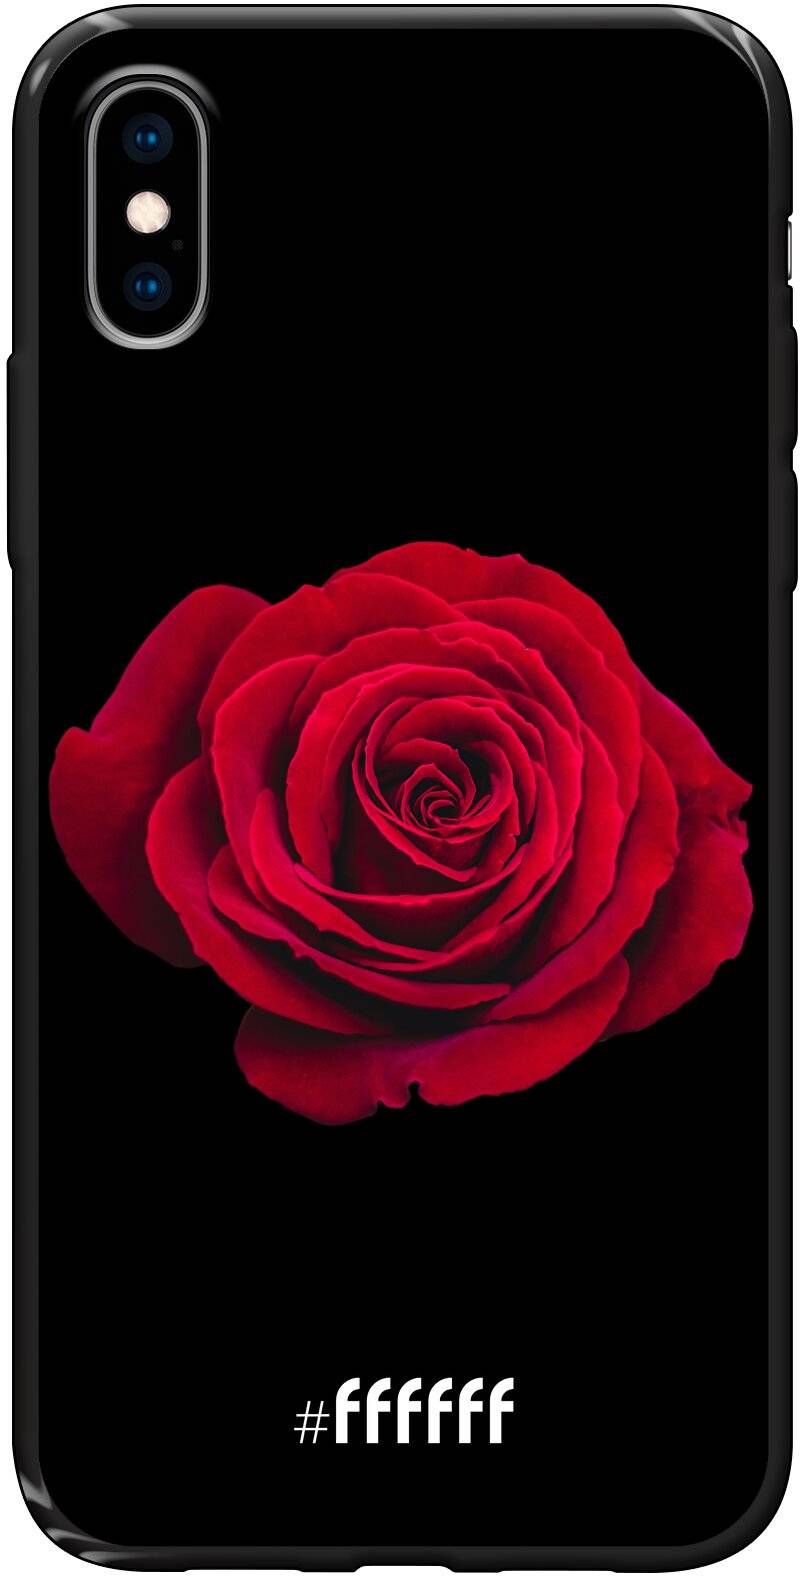 Radiant Rose iPhone X